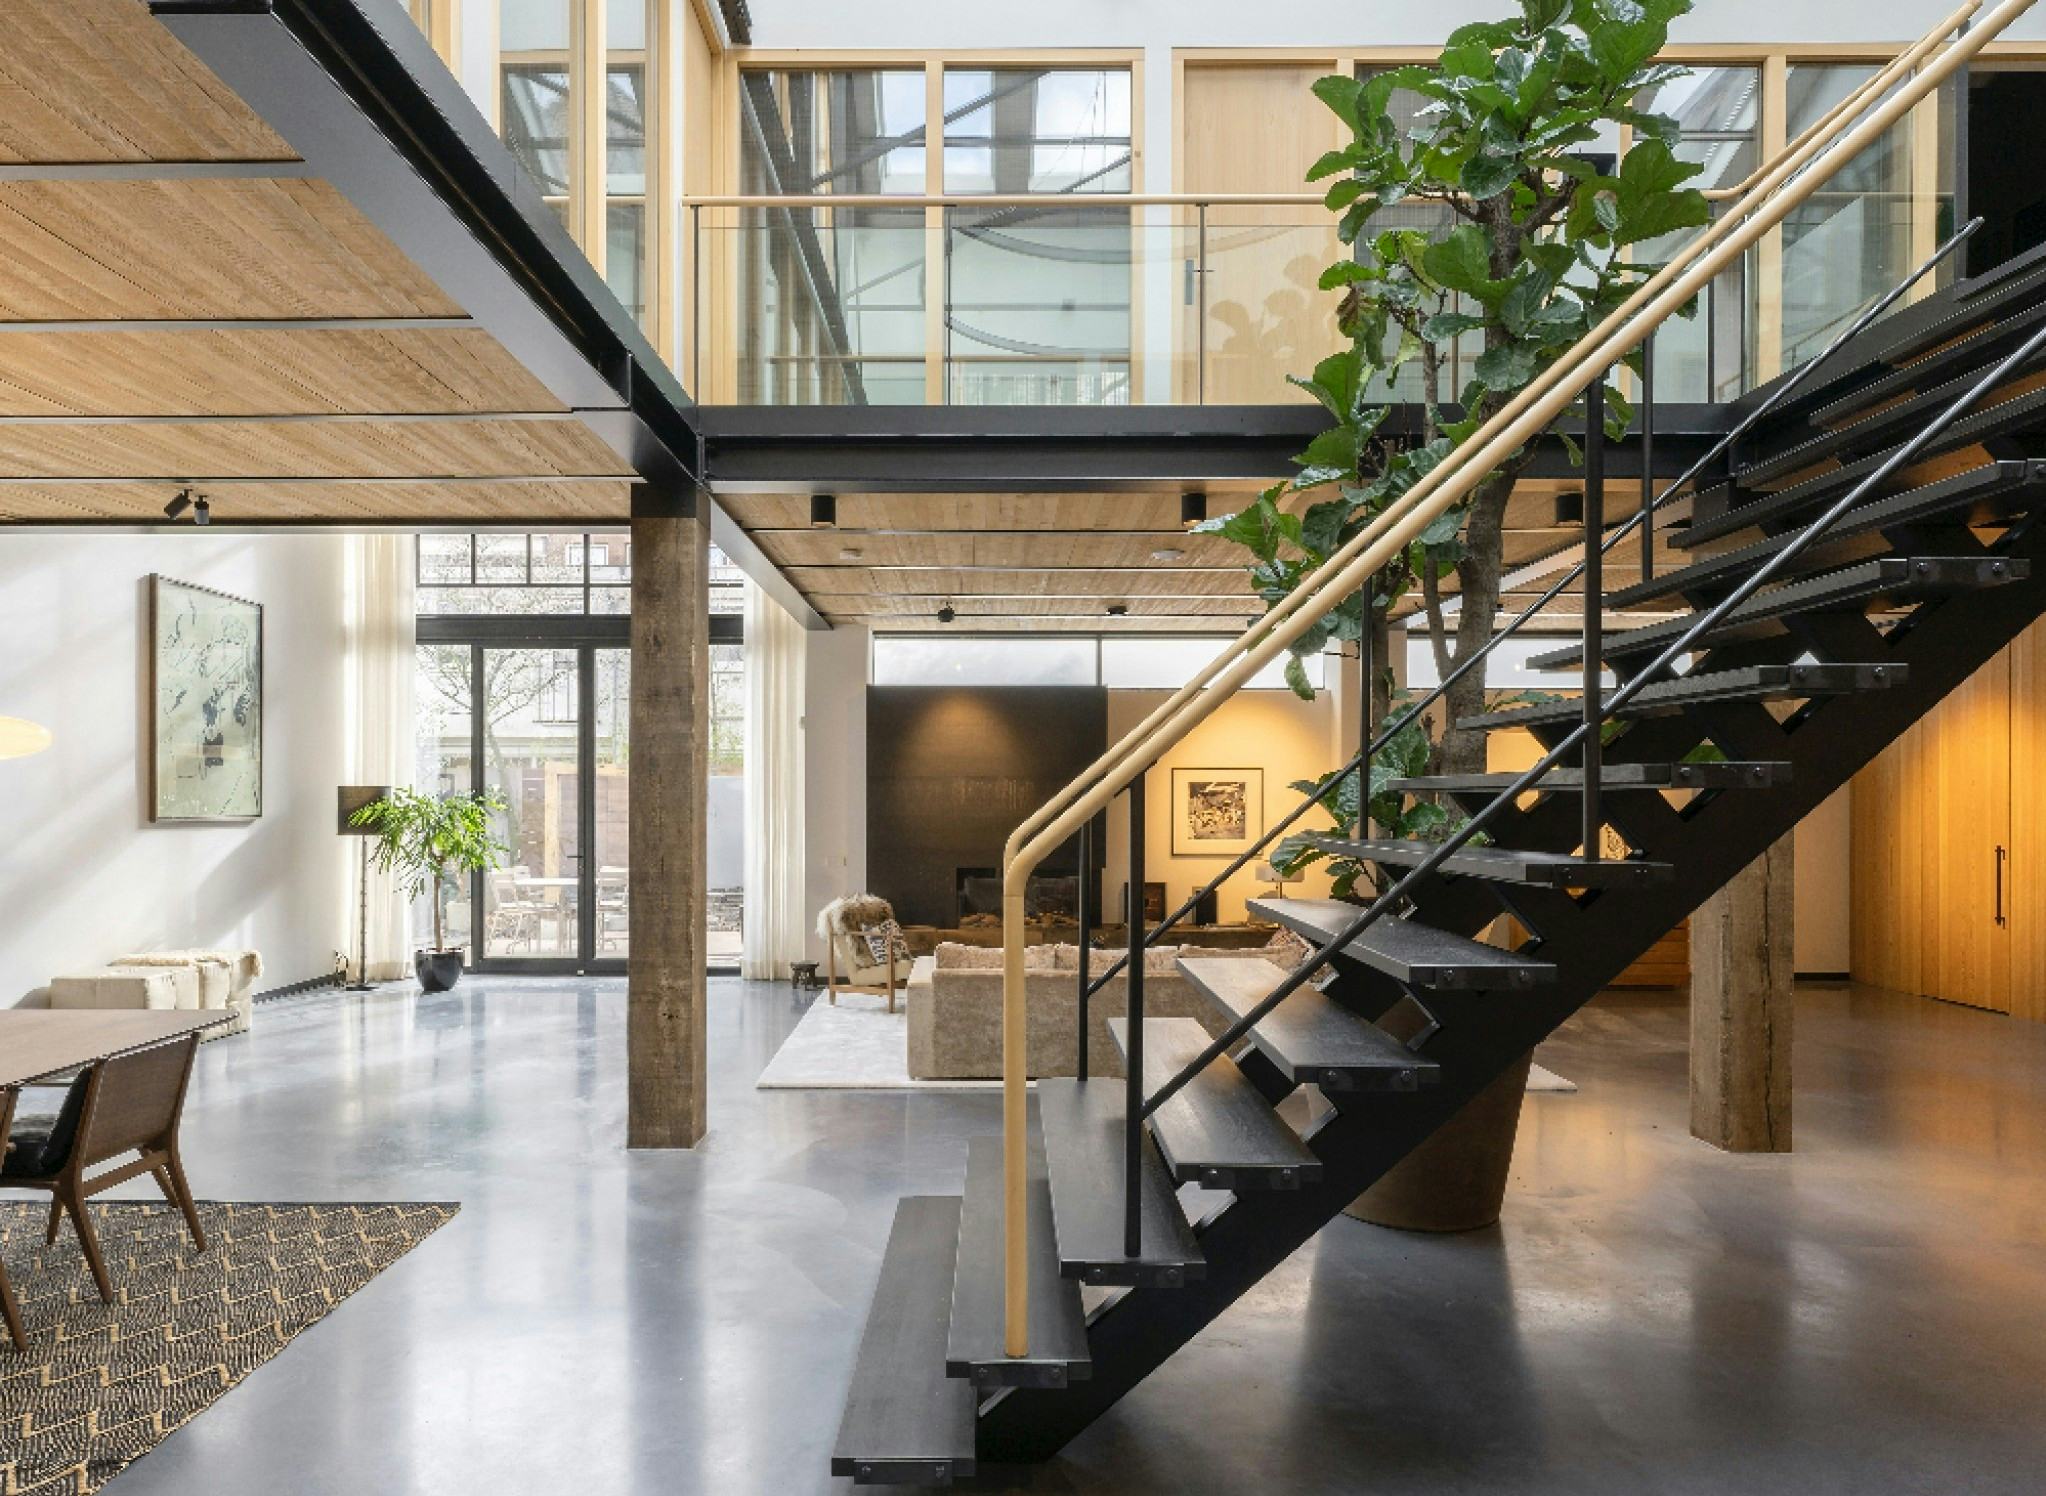 Winnaar publieksprijs appartement interieur van het jaar: The Gymnasium in Amsterdam door Robbert de Goede. Beeld Marcel van der Burg